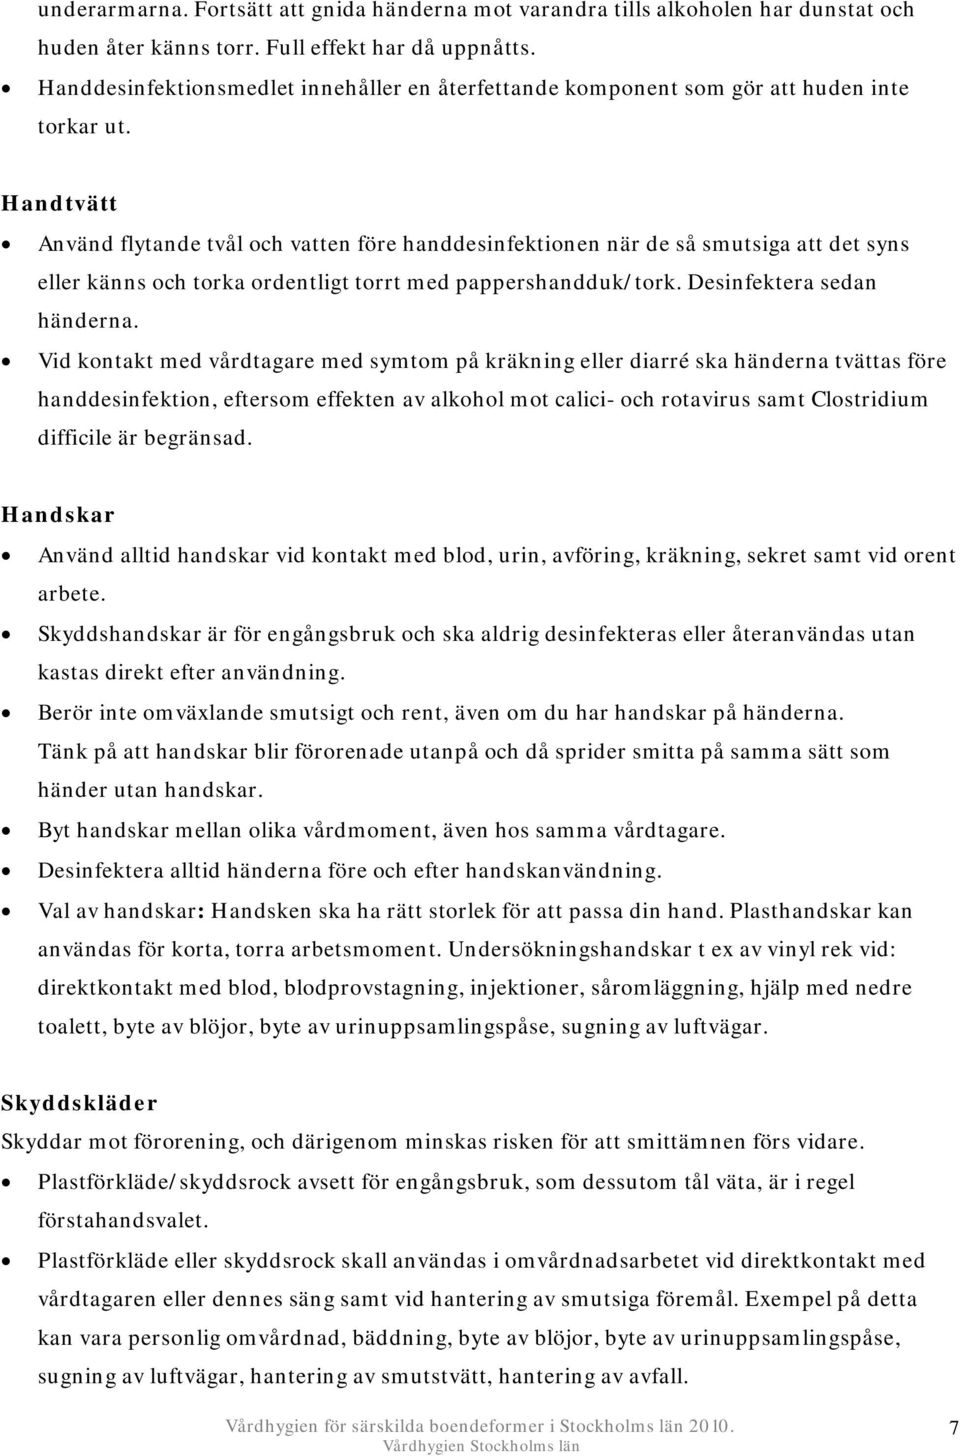 FÖR SÄRSKILDA BOENDEFORMER I STOCKHOLMS LÄN - PDF Free Download